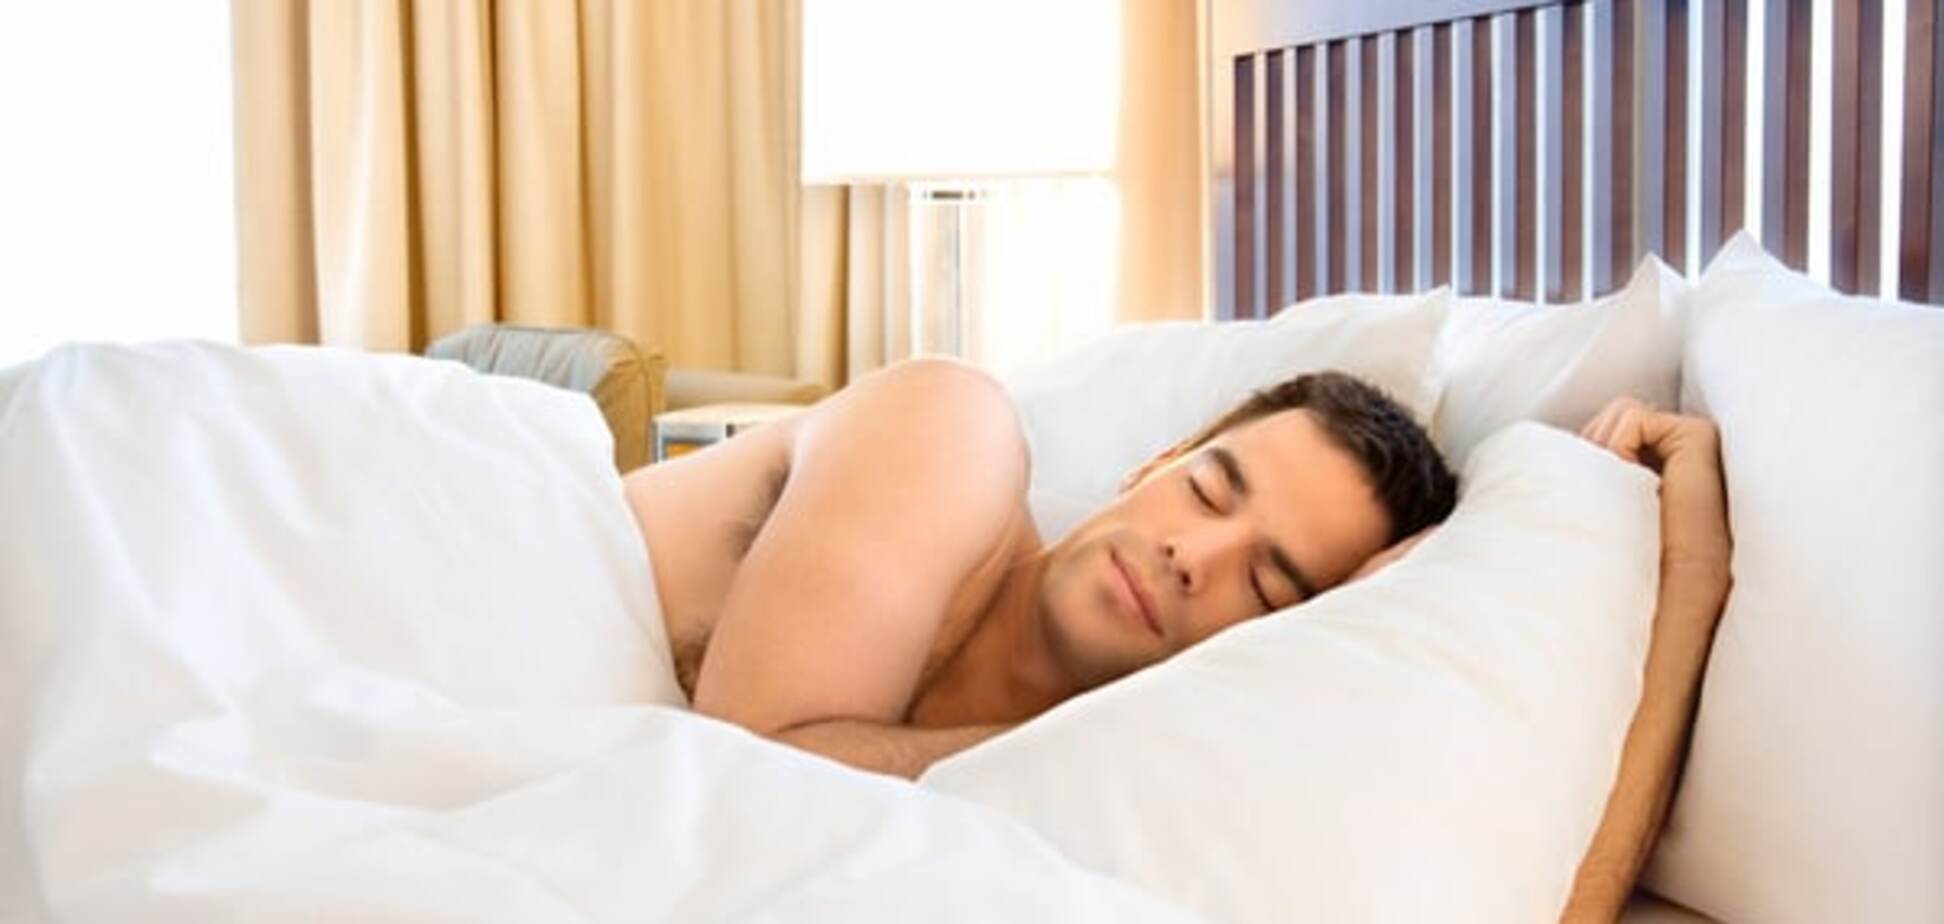 Ученые объяснили, почему мужчина должен спать голым